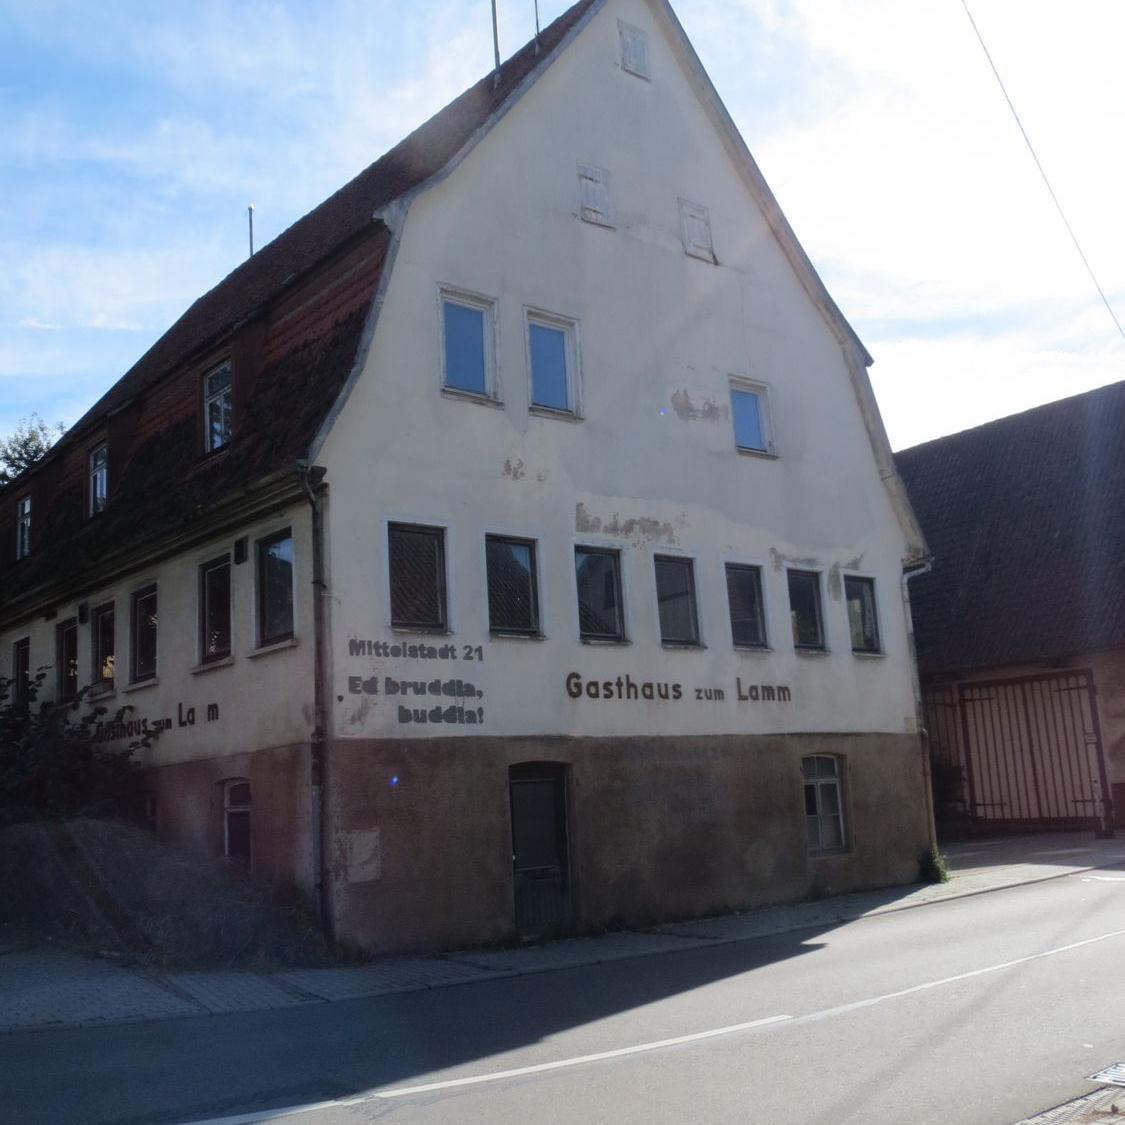 2012: Die Beschriftung wurde als Ermunterung am Lamm angebracht, weil von Seiten der Stadt Reutlingen so lange kein Engagement zu sehen war  - Mittelstadt 21 - Es bruddla, buddla! (Quelle: Dirk Glück)